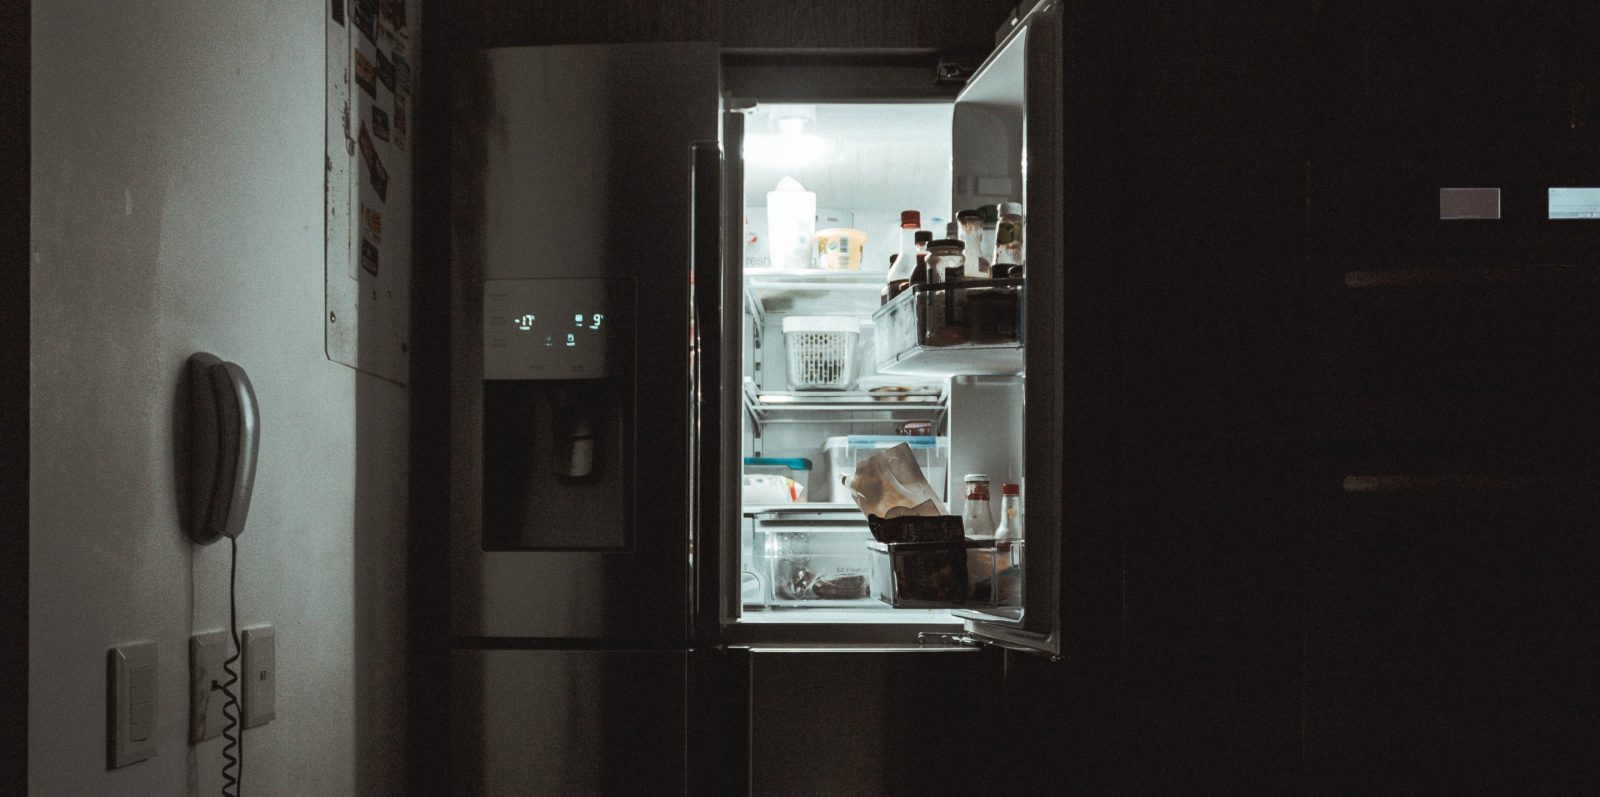 Comment entretenir son réfrigérateur pour éviter de trop consommer